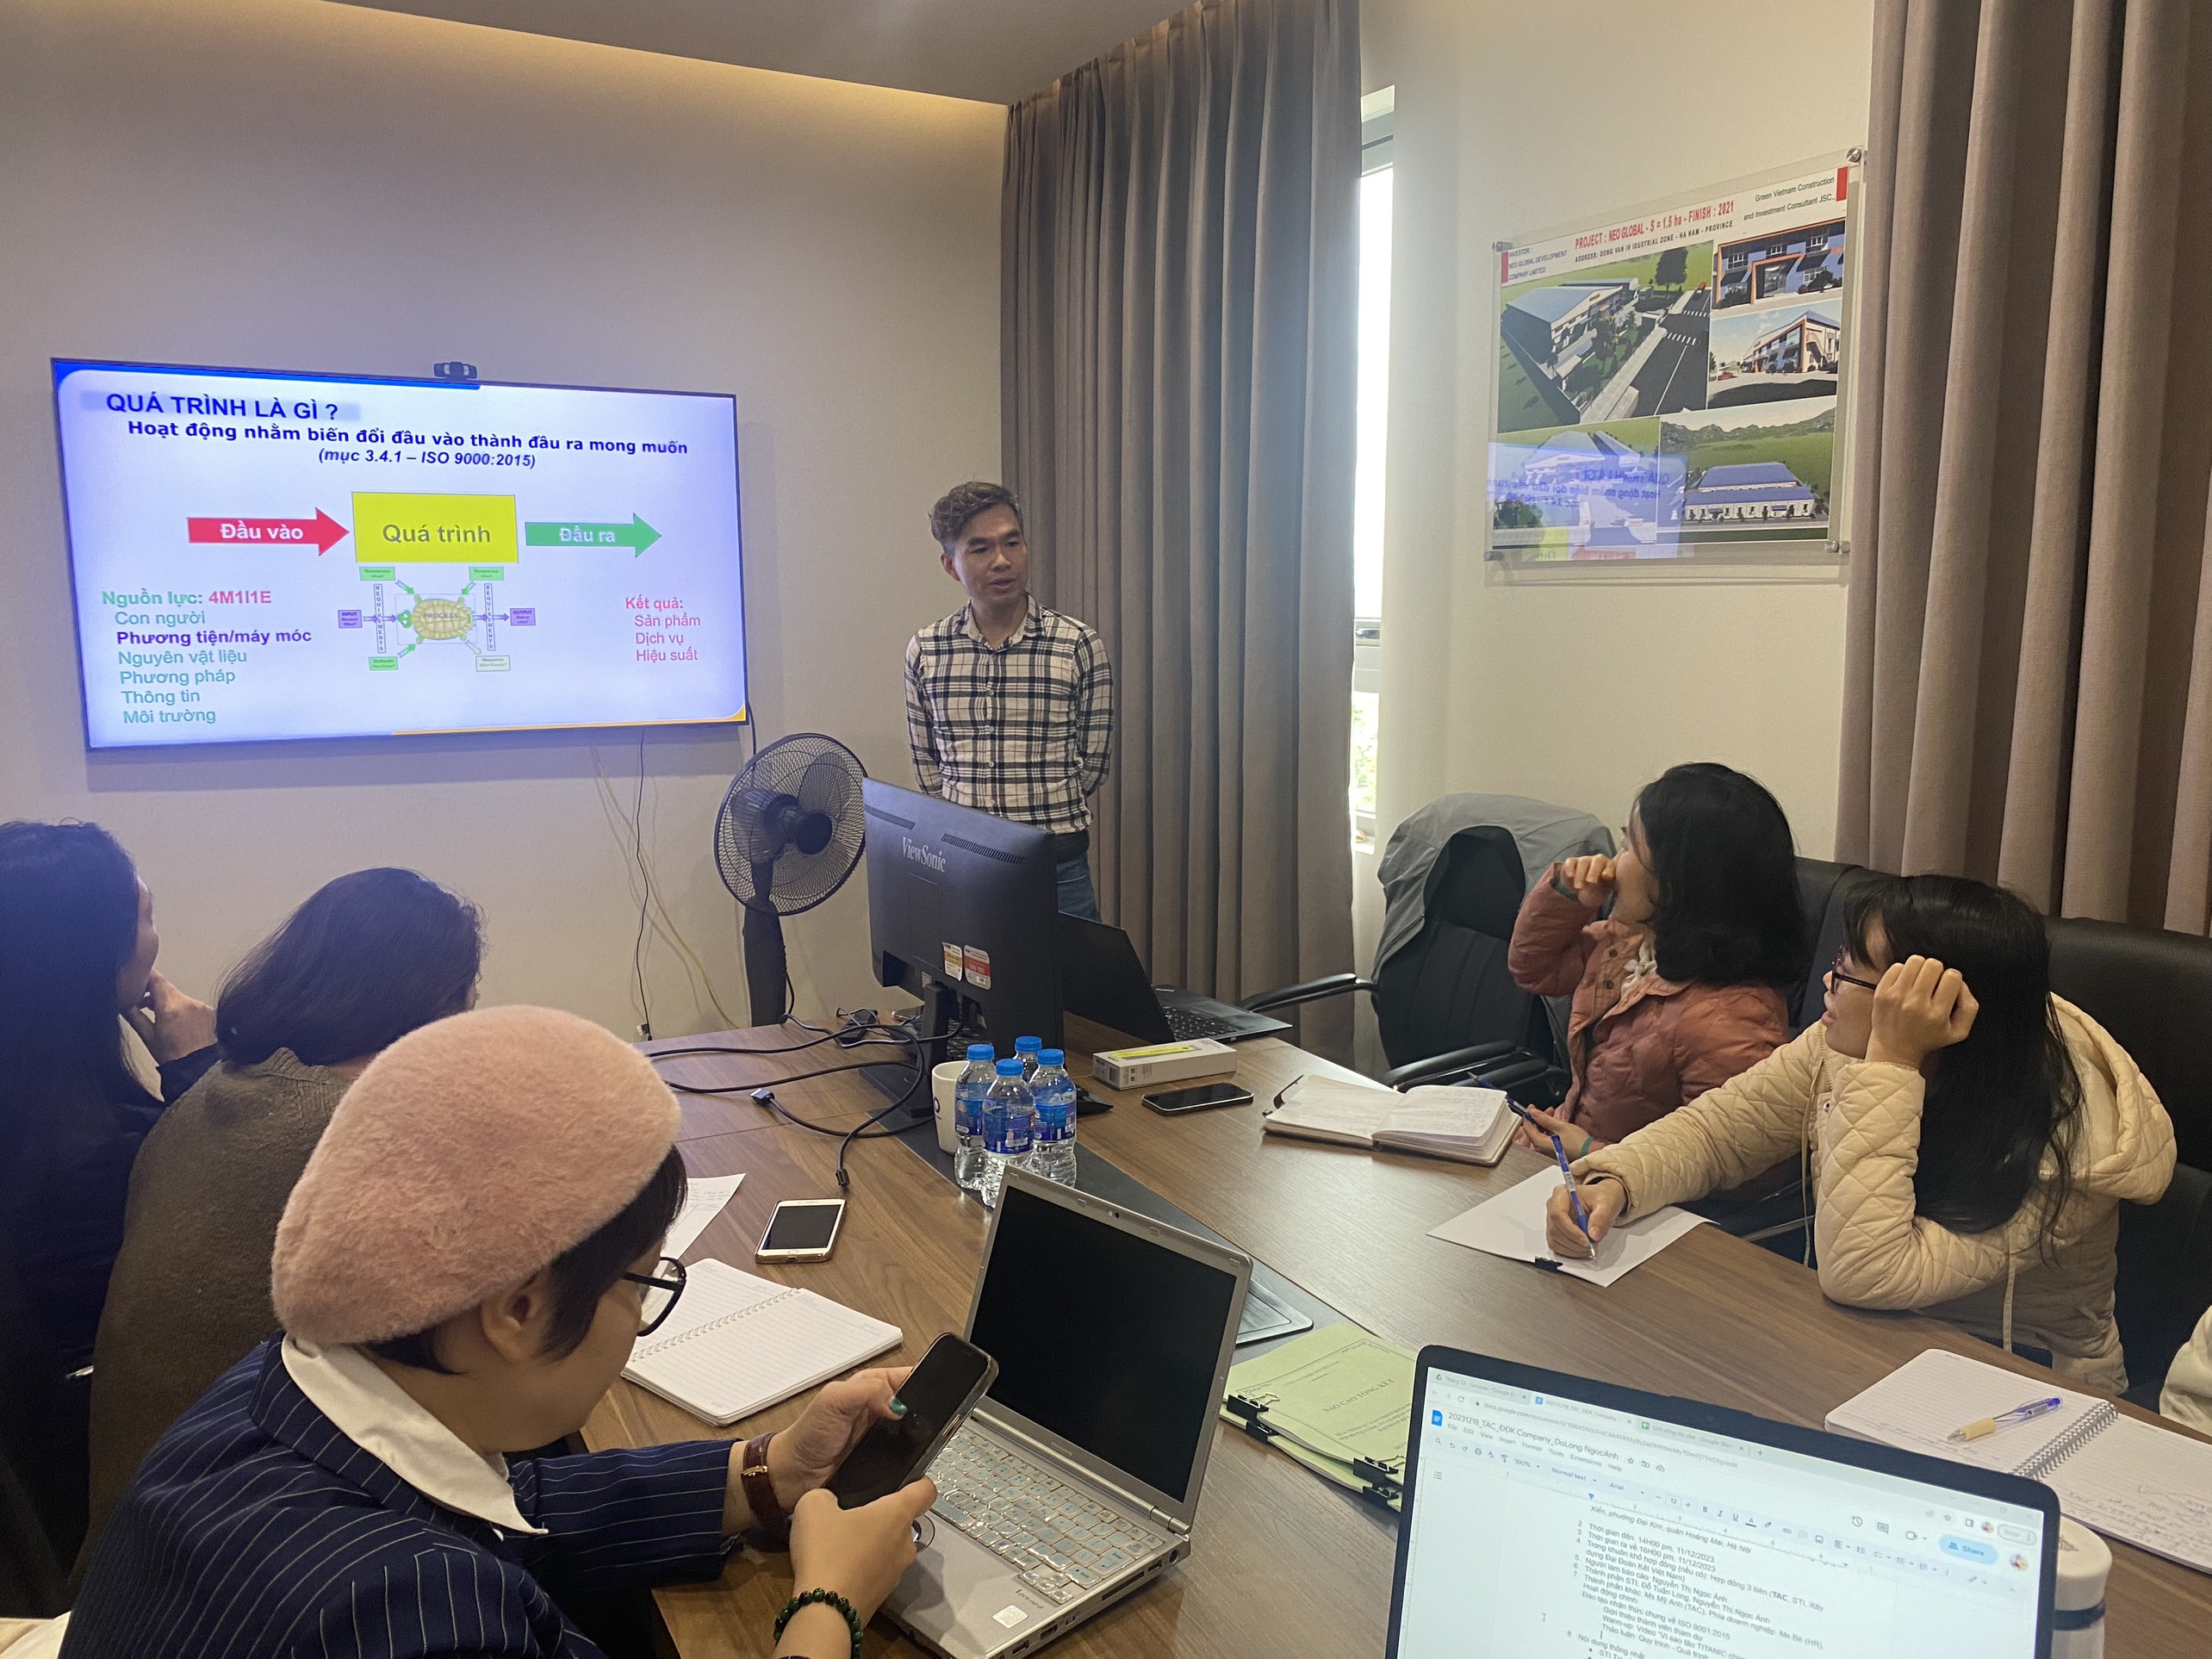 Công Ty Cổ phần Thiết kế và Xây dựng Đại Đoàn kết Việt Nam: Tối ưu hóa quy trình nhằm ổn định kinh doanh và tạo dựng cơ hội mới